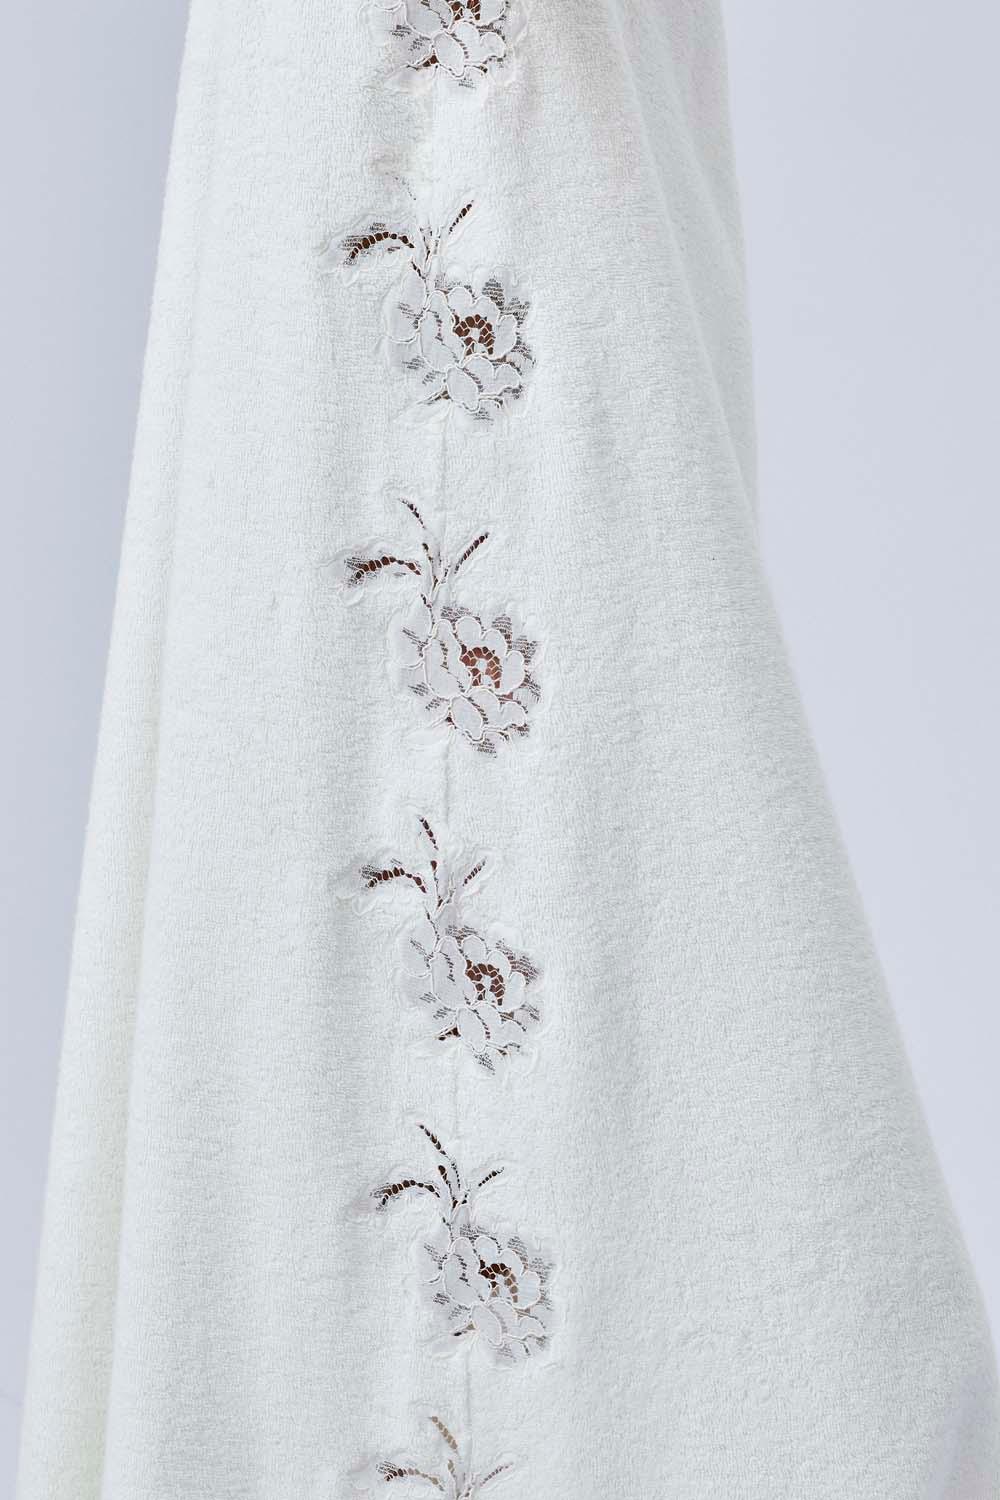 Berenice - Long Towel Belted Bathrobe - Off White - Bocan